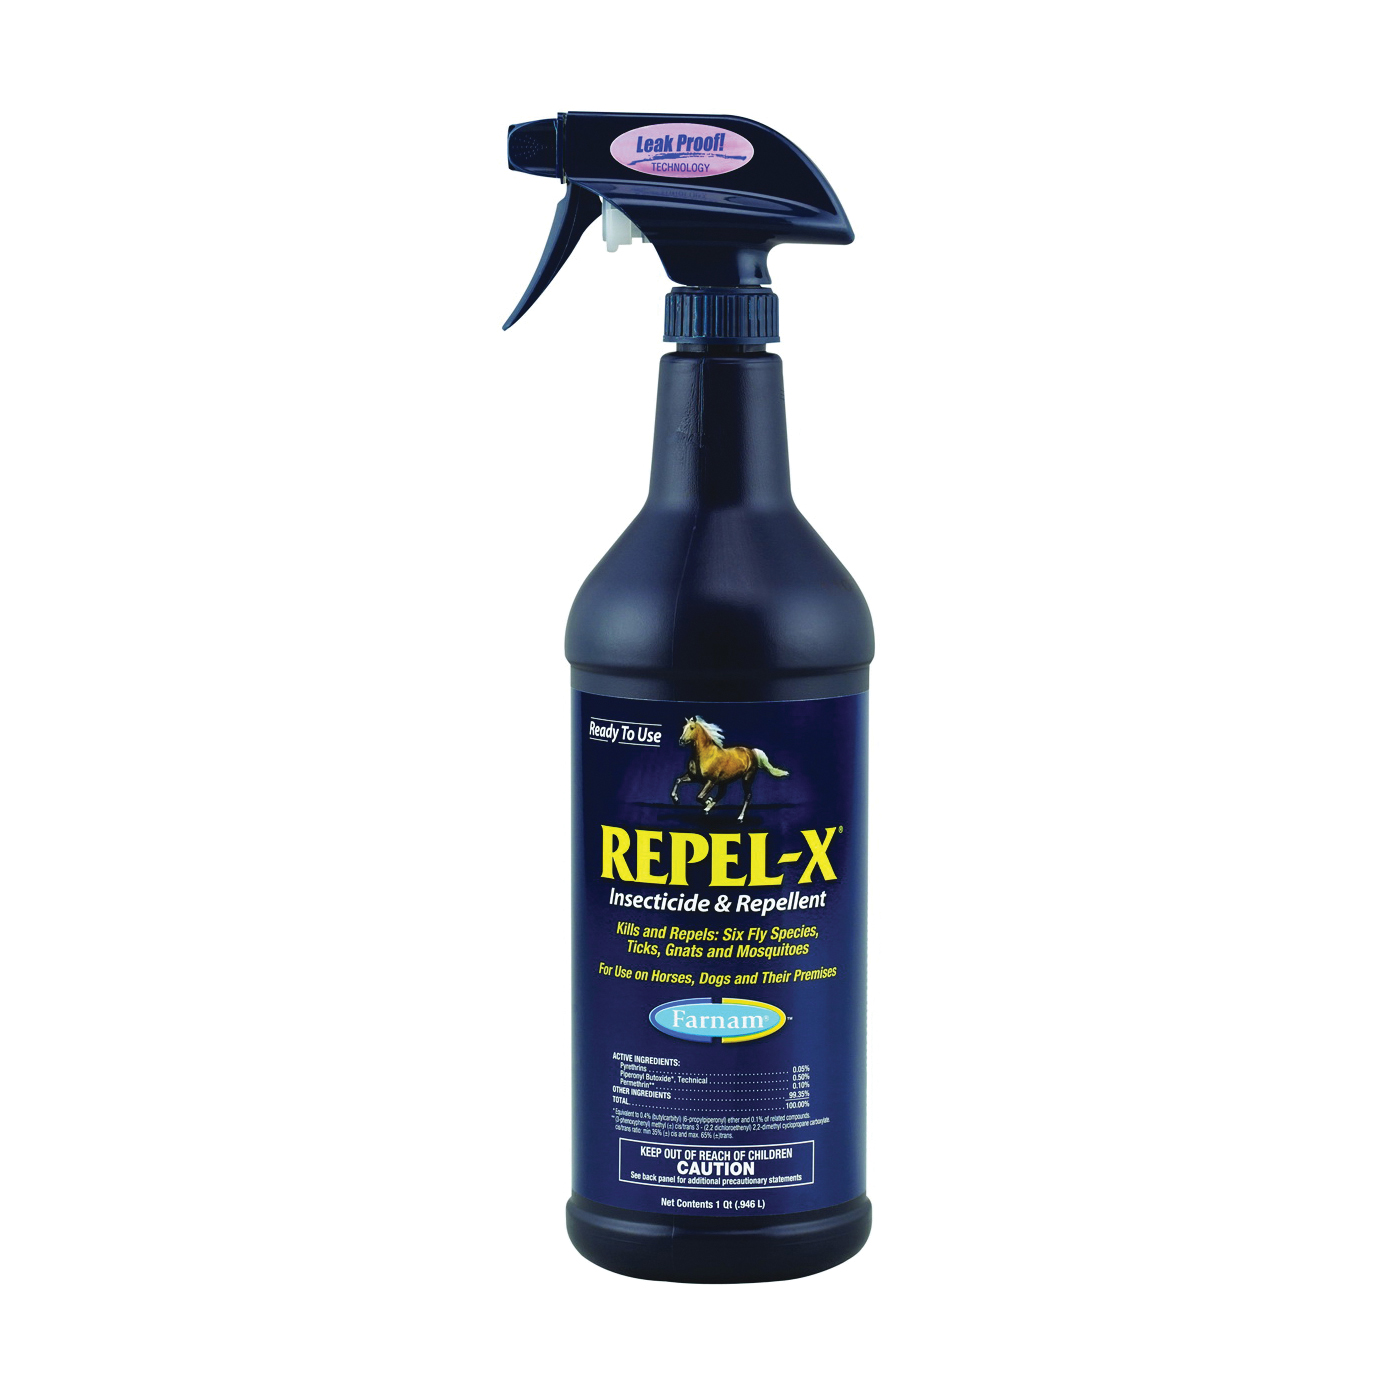 Repel-X 10330 Insecticide and Repellent, Liquid, Milky White, Citronella, 32 oz